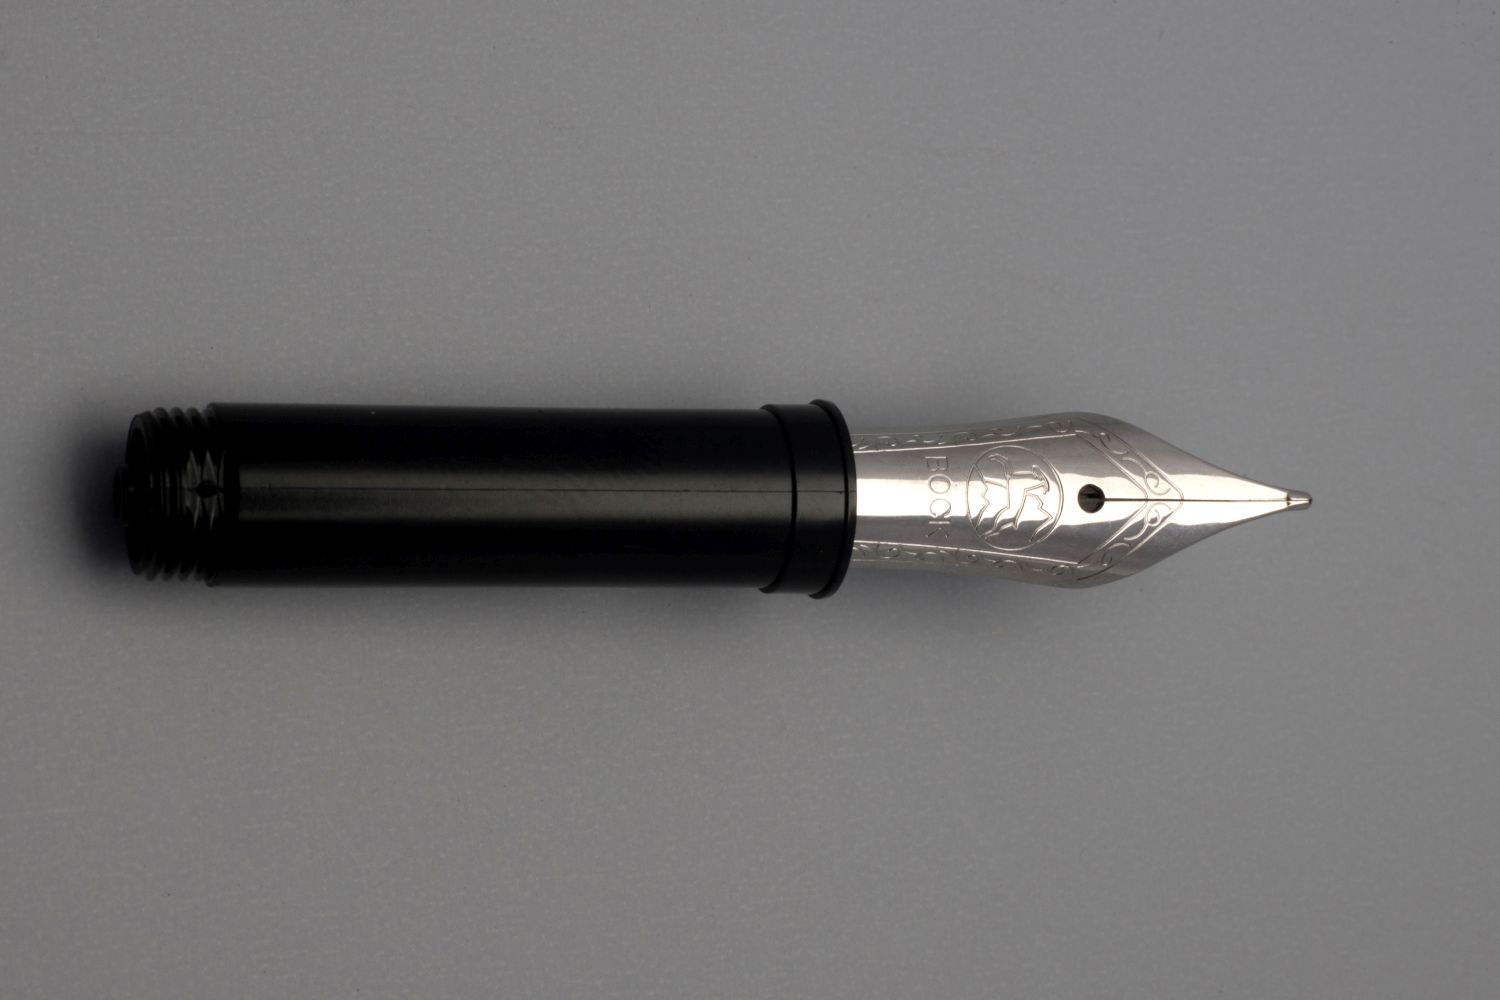 Medium-sized, small nib, including an ink-feed system